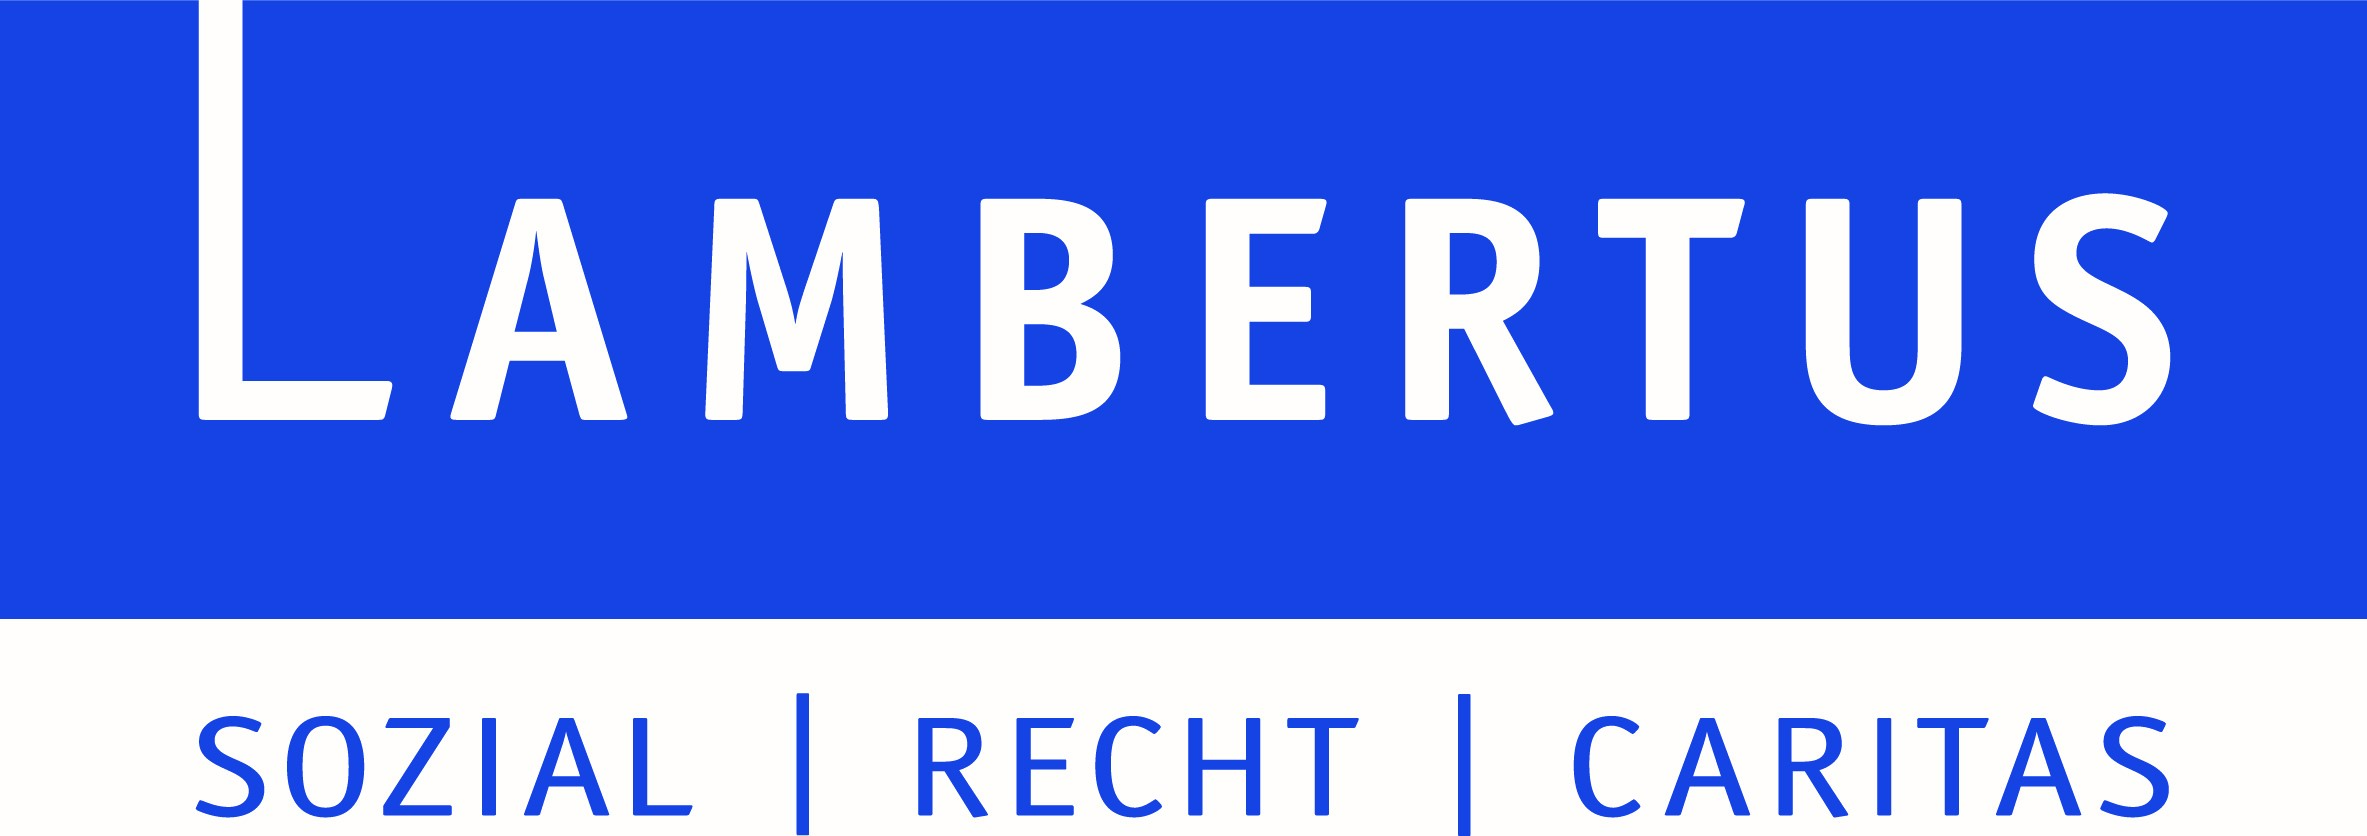 Lambertus-Verlag GmbH